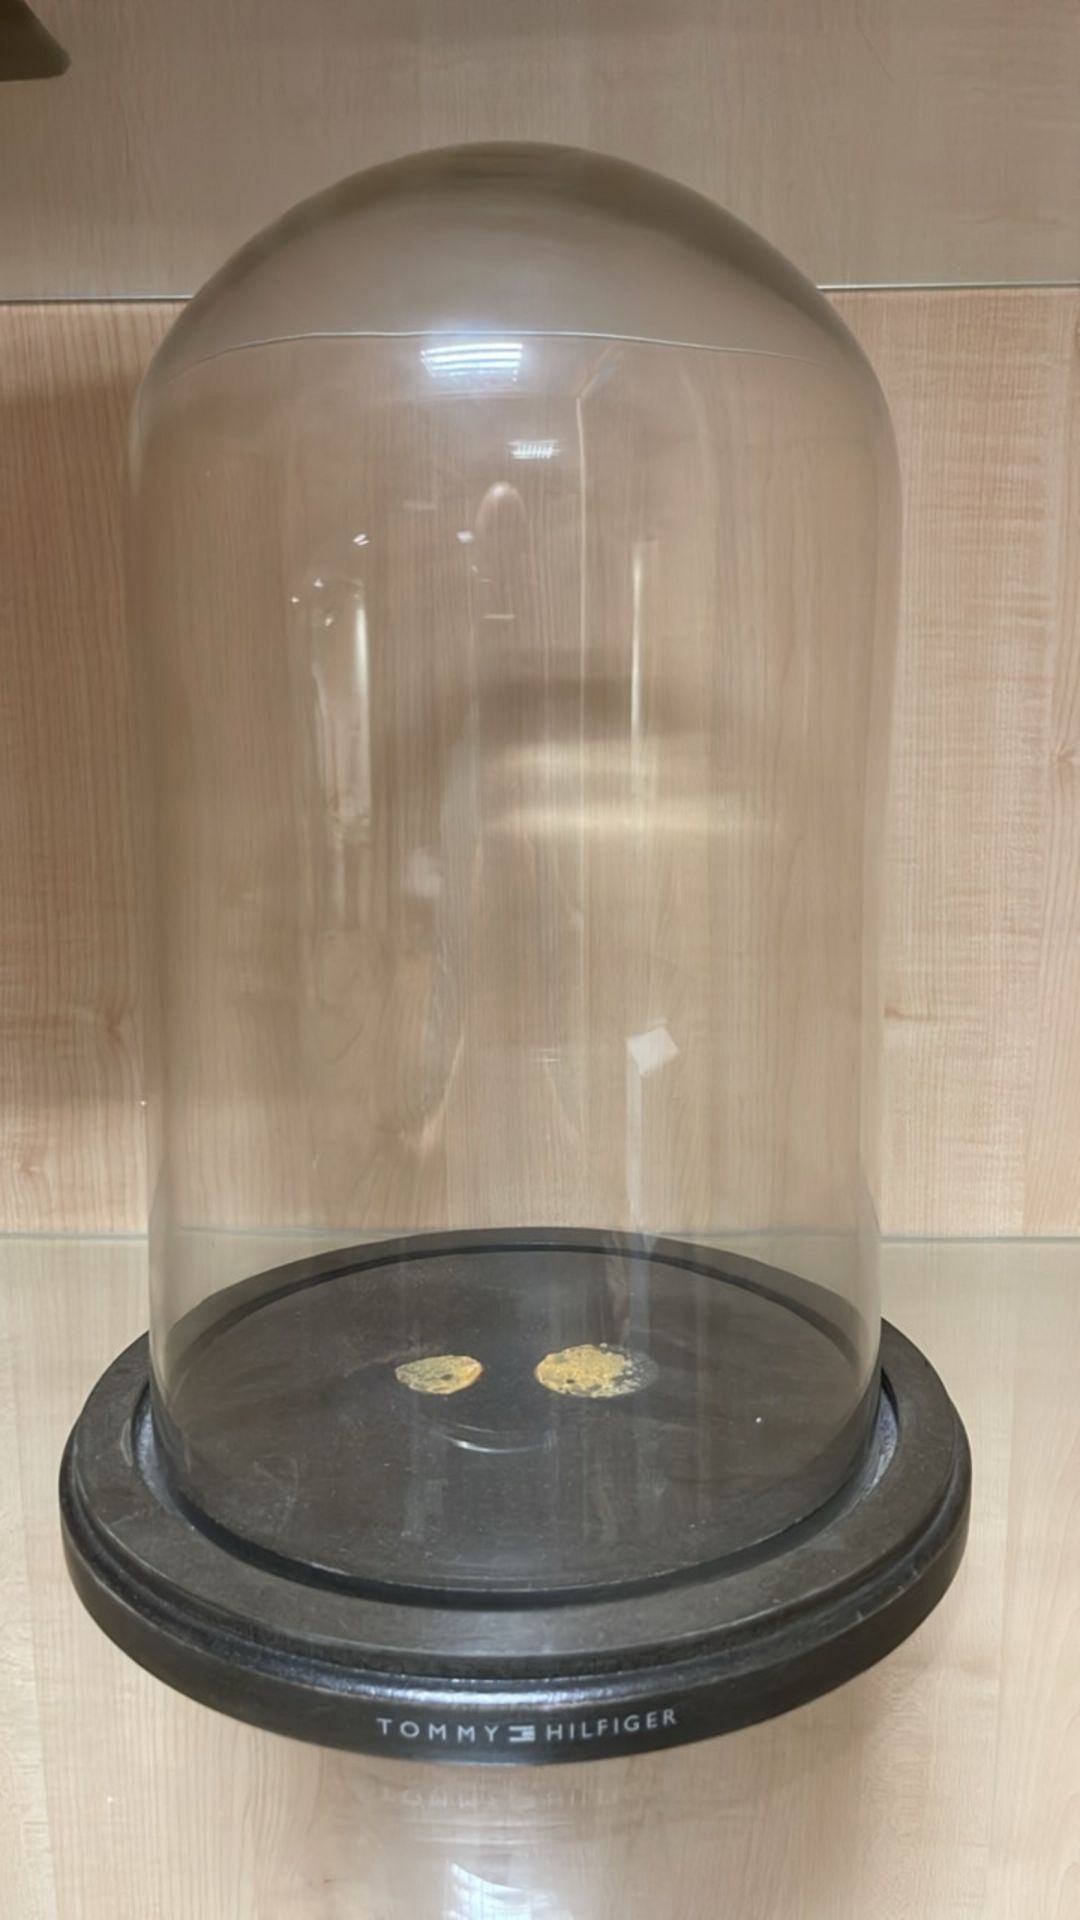 Tommy Hilfiger Glass Bell Jar - Image 2 of 3